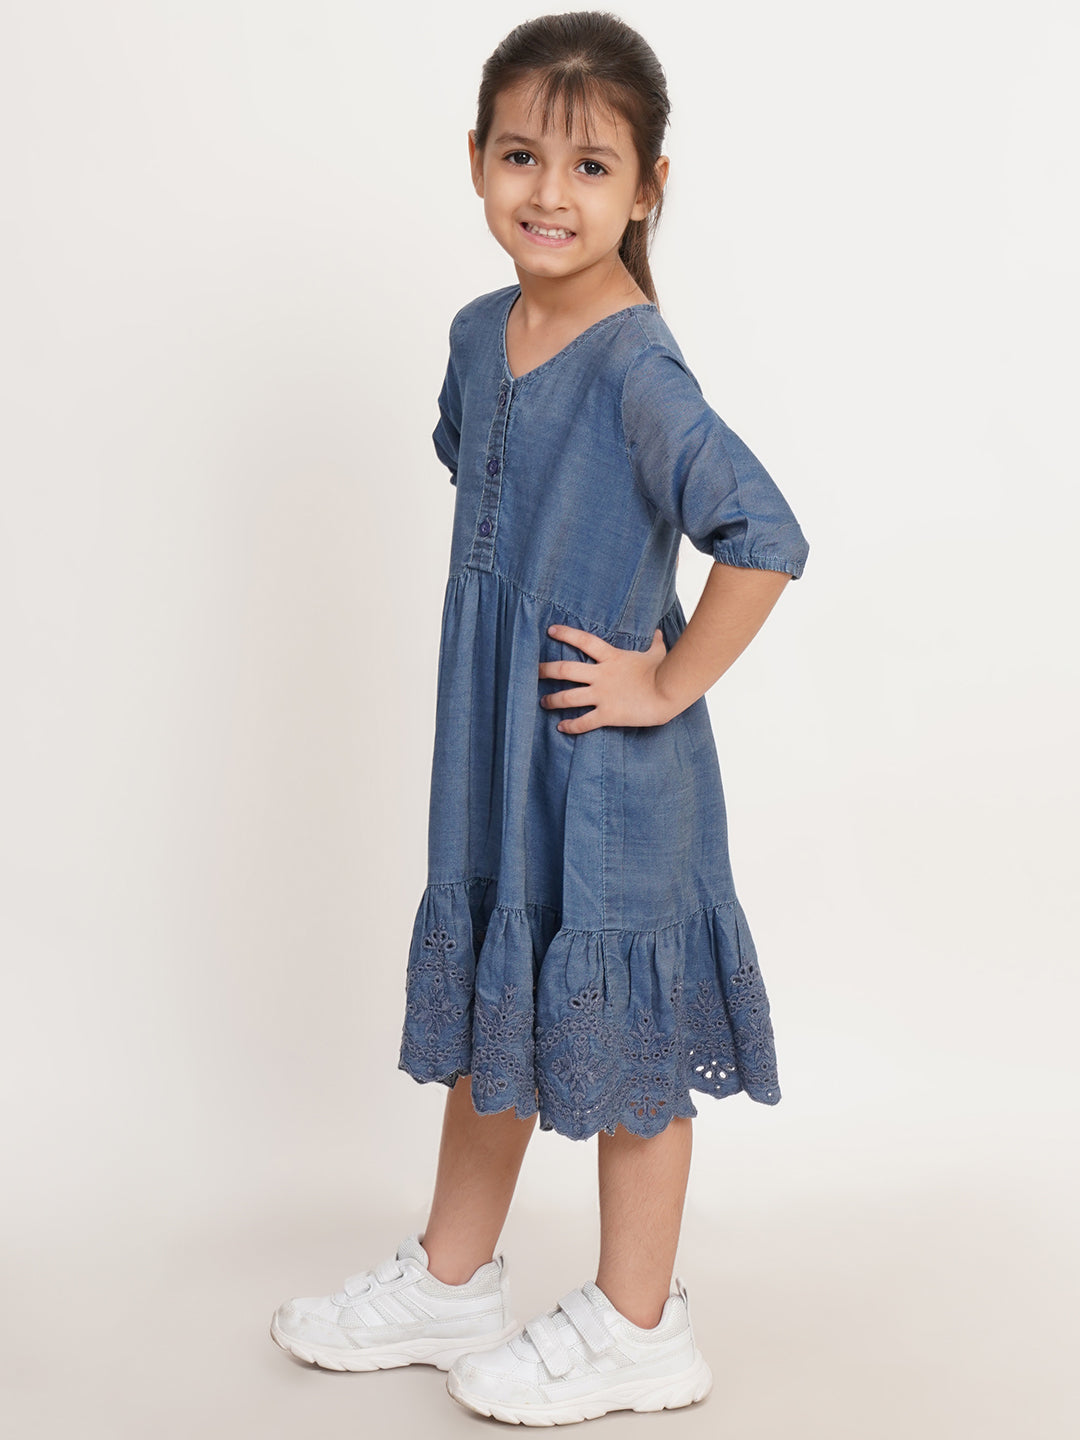 CREATIVE KID'S Girl Navy Blue Schiffli Denim Fit & Flare Dress